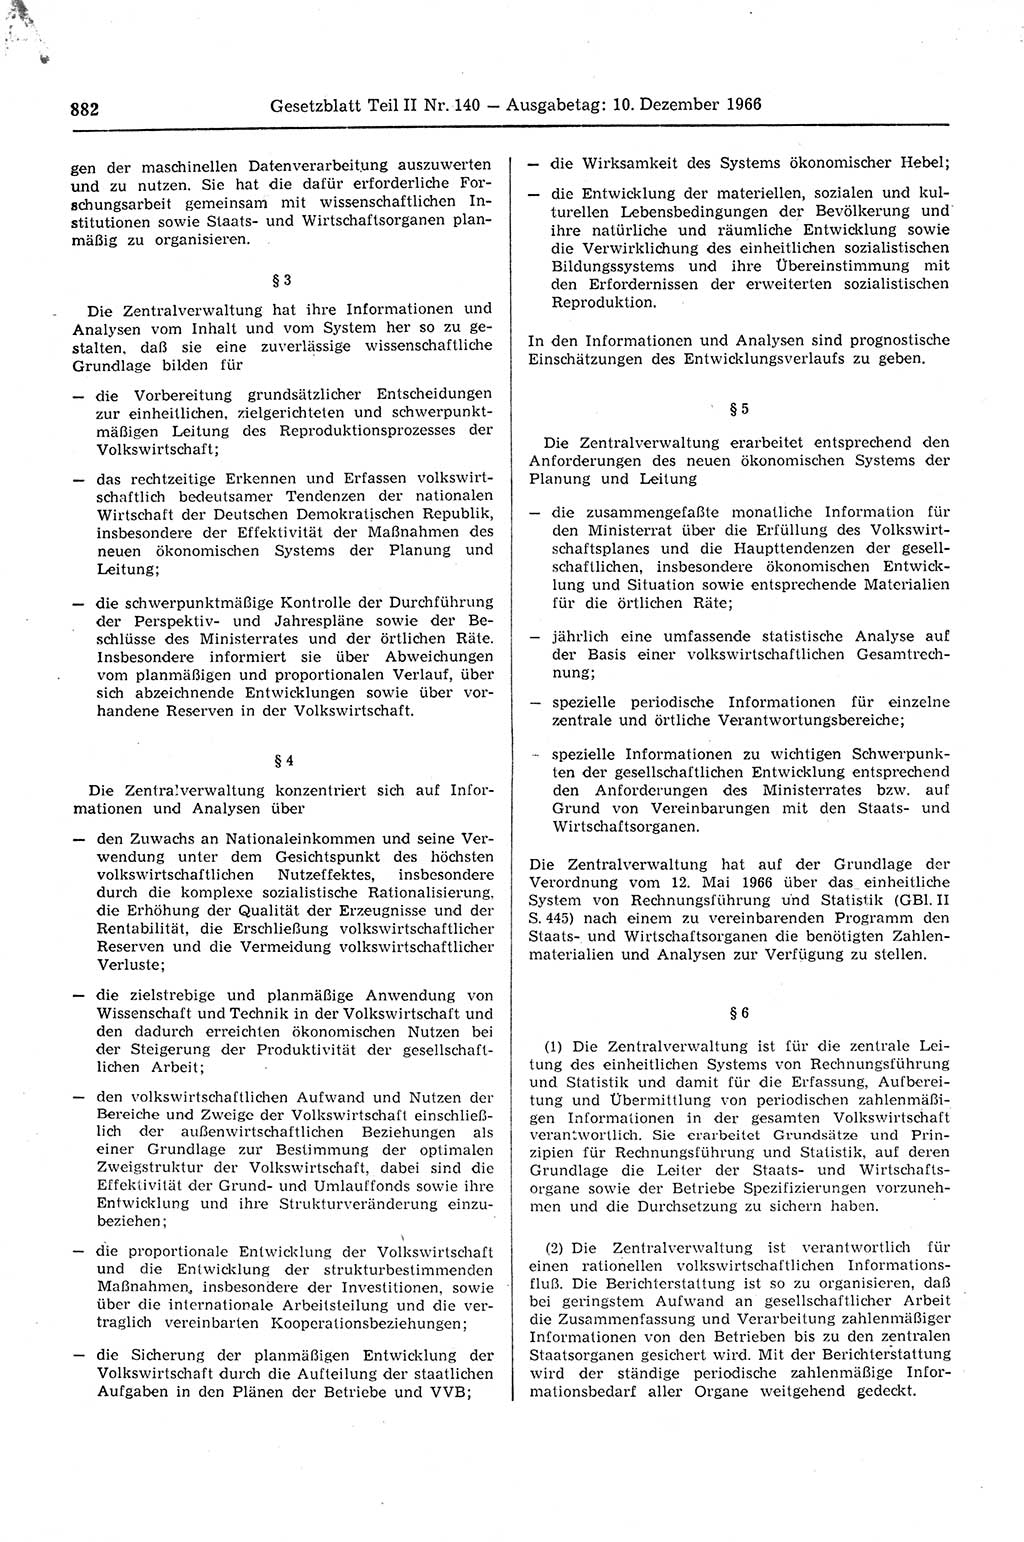 Gesetzblatt (GBl.) der Deutschen Demokratischen Republik (DDR) Teil ⅠⅠ 1966, Seite 882 (GBl. DDR ⅠⅠ 1966, S. 882)